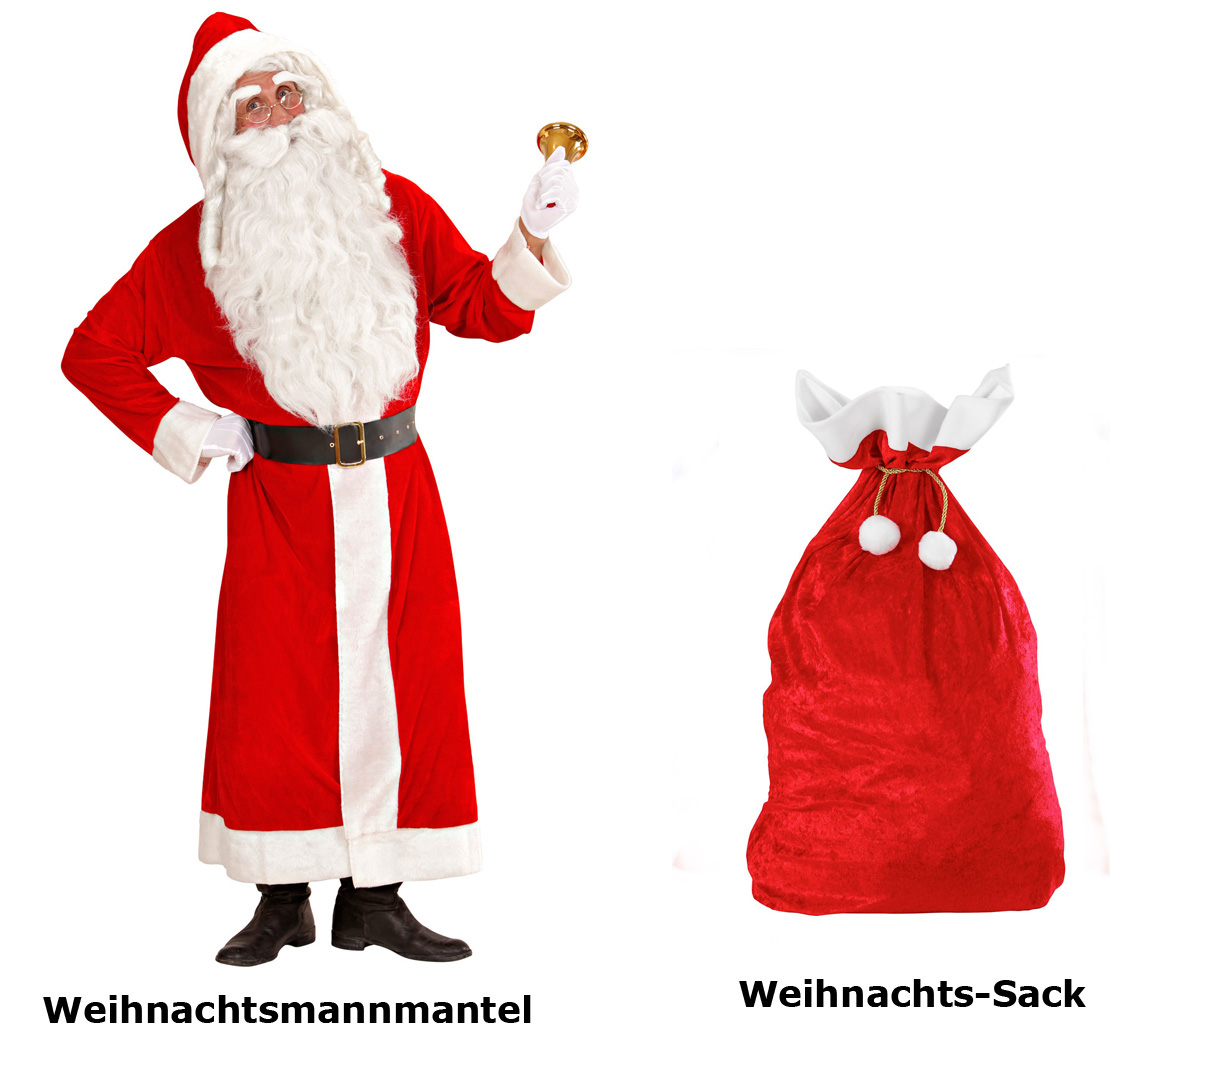 WEIHNACHTSMANN KOSTÜM Mantel Weihnachtsmannkostüm Gr XL 54/56 Nikolaus Santa